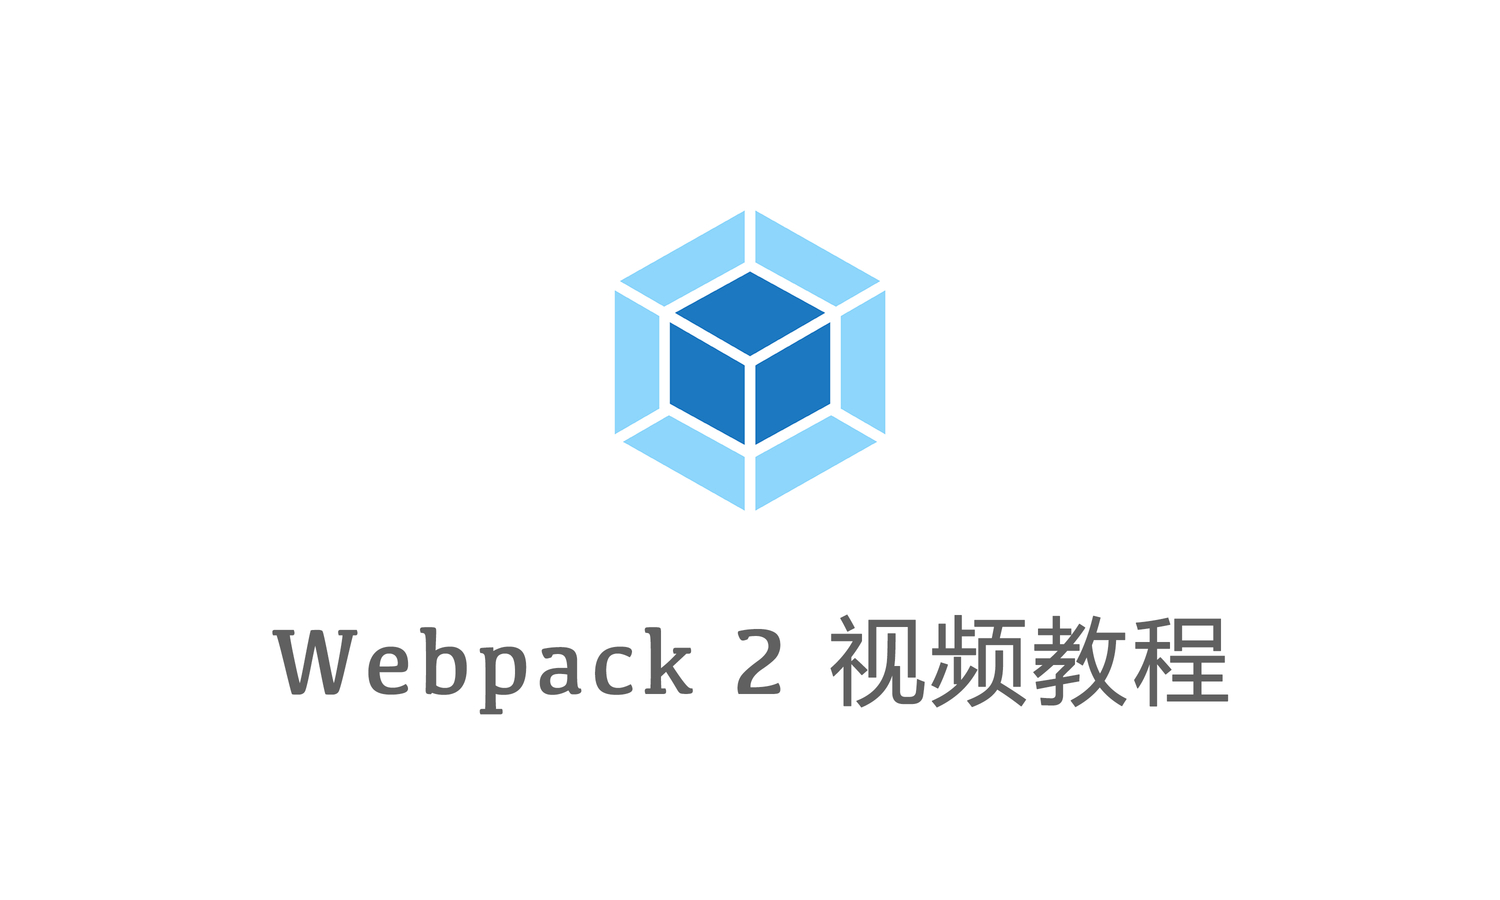 [原创] Webpack 2 视频教程